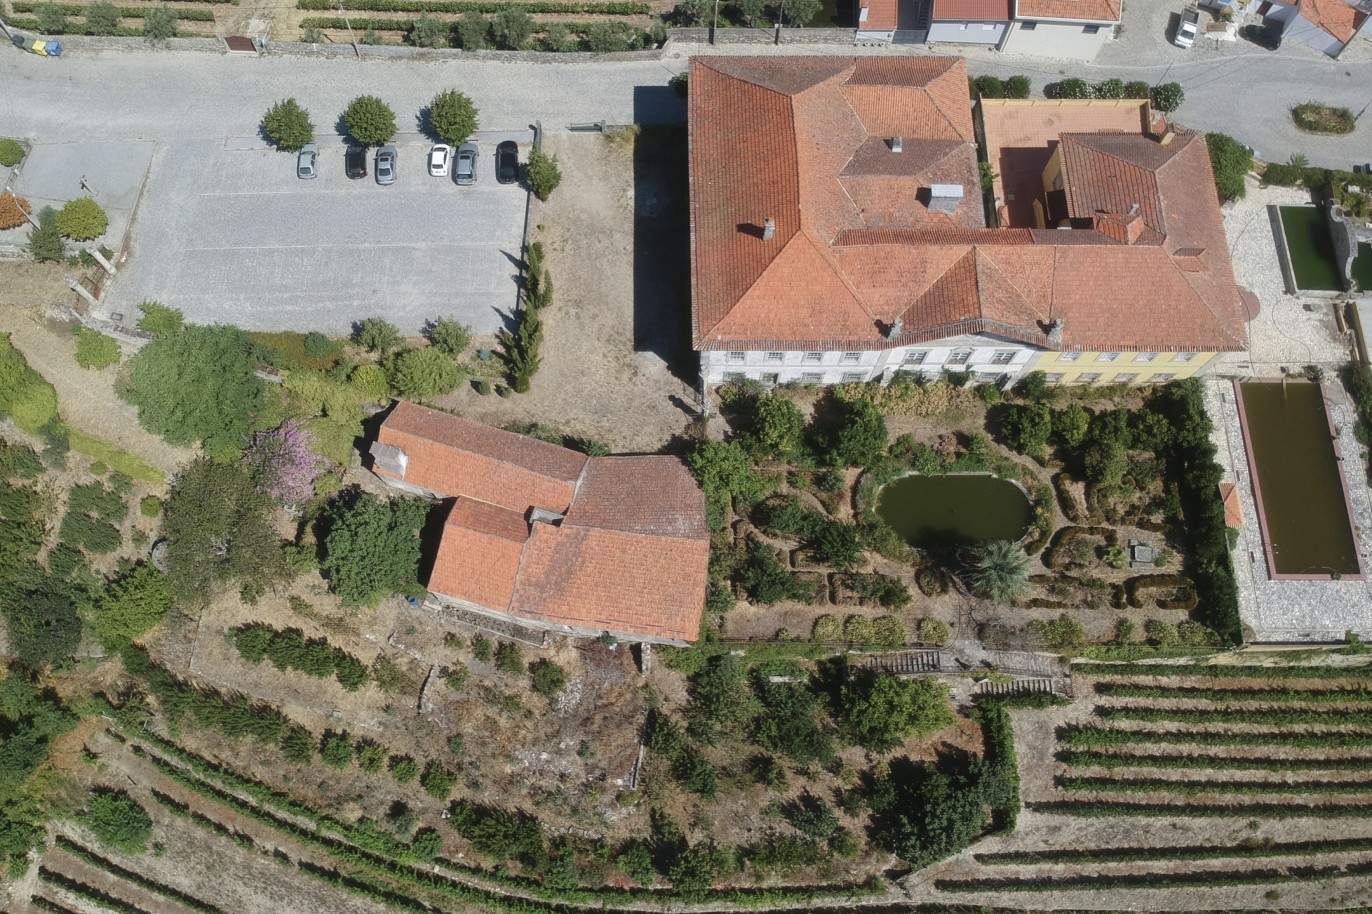 Venda: Palacete para restaurar com jardins, Lamego, Alto Douro _207352